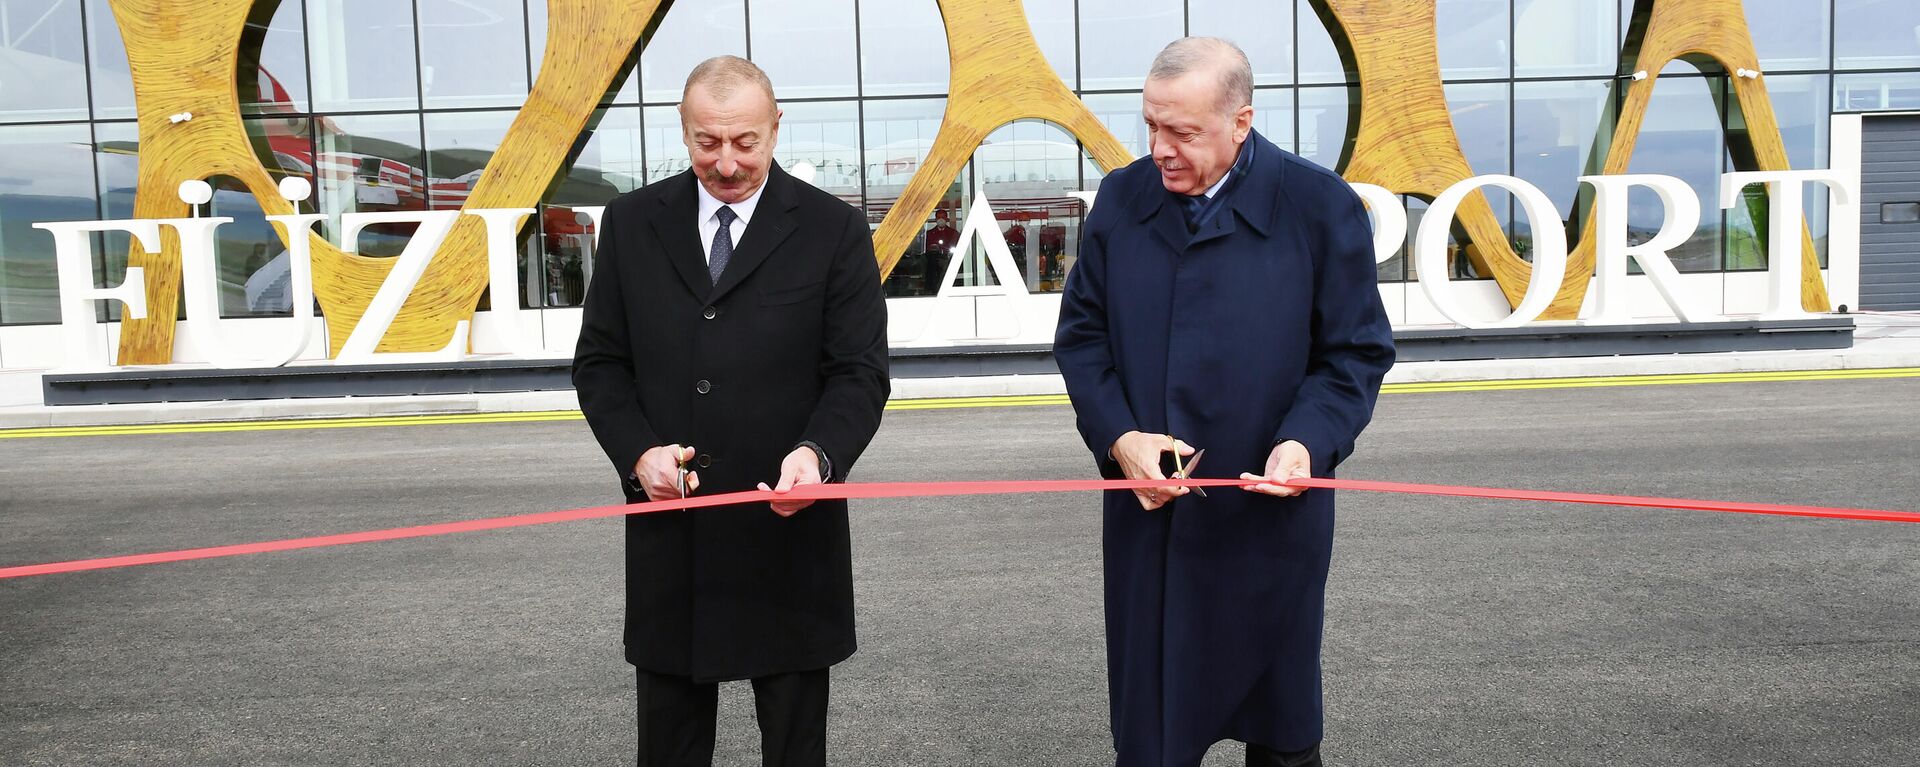 Ильхам Алиев и Реджеп Тайип Эрдоган приняли участие в открытии международного аэропорта в Физули - Sputnik Азербайджан, 1920, 26.10.2021